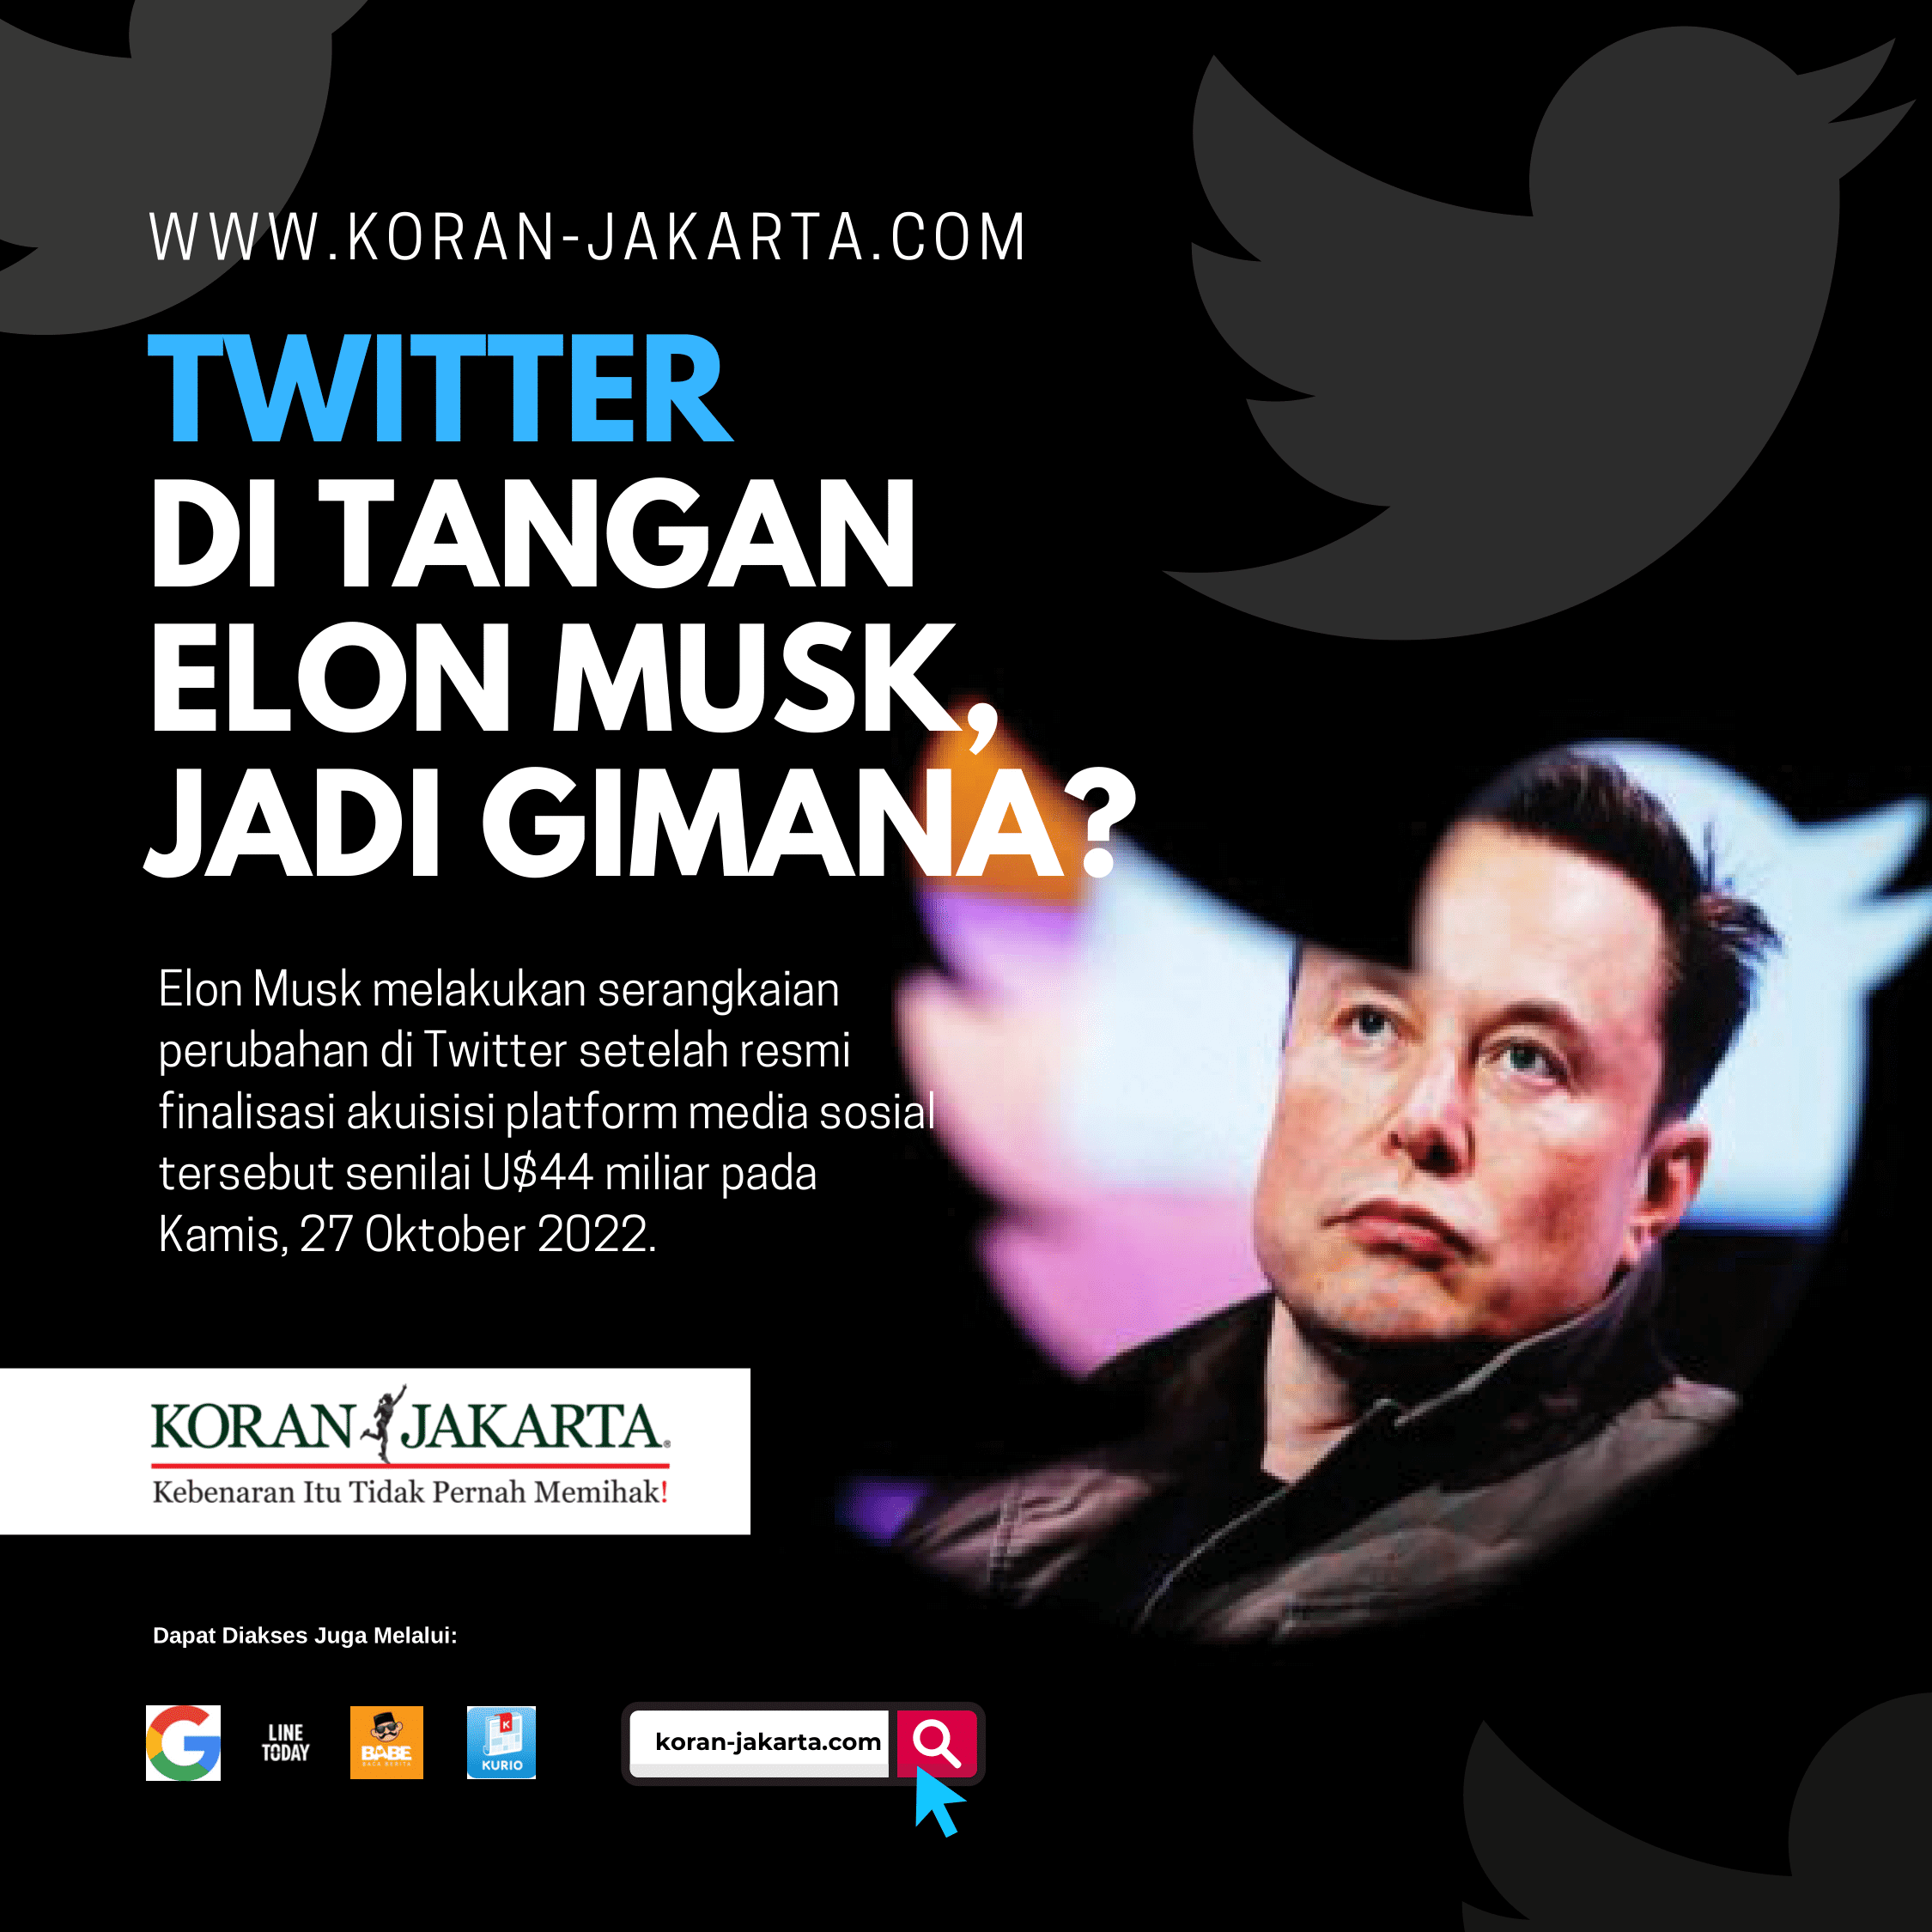 Twitter di Tangan Elon Musk Jadi Gimana? 1